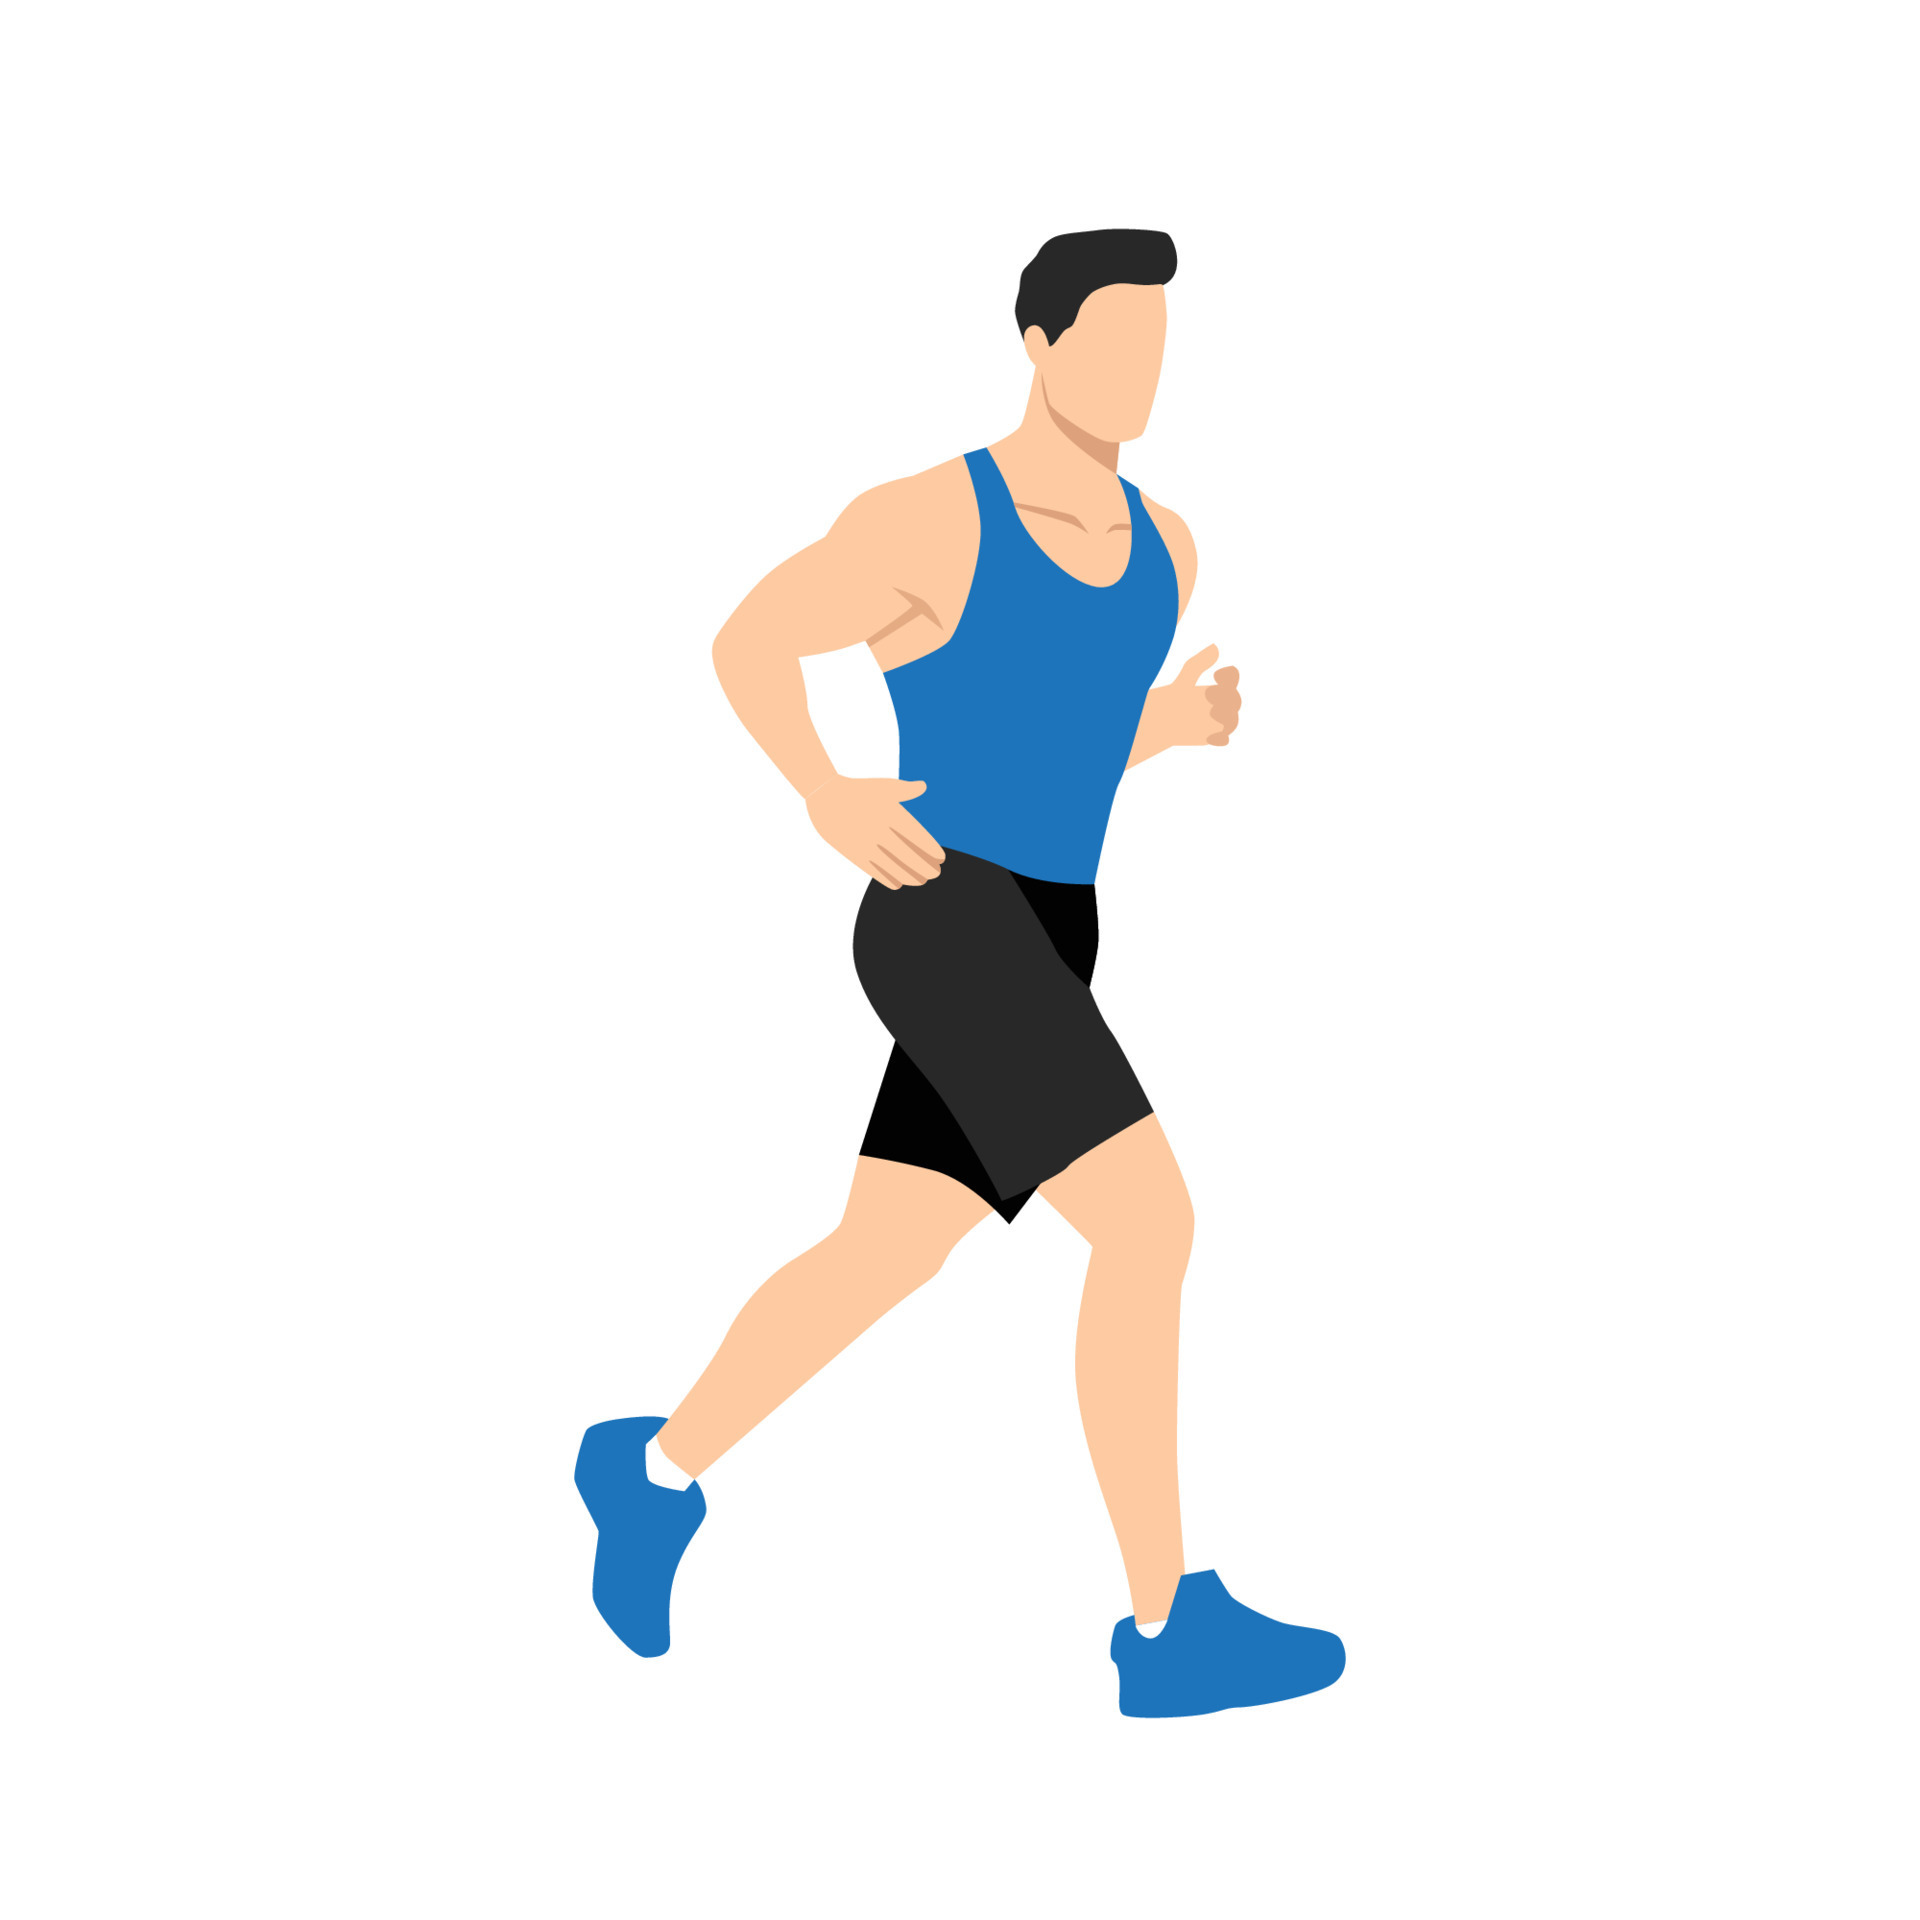 homem adulto musculoso correndo ou correndo. exercício de treino. atleta de  maratona fazendo sprint ao ar livre - ilustração vetorial plana simples.  8424336 Vetor no Vecteezy